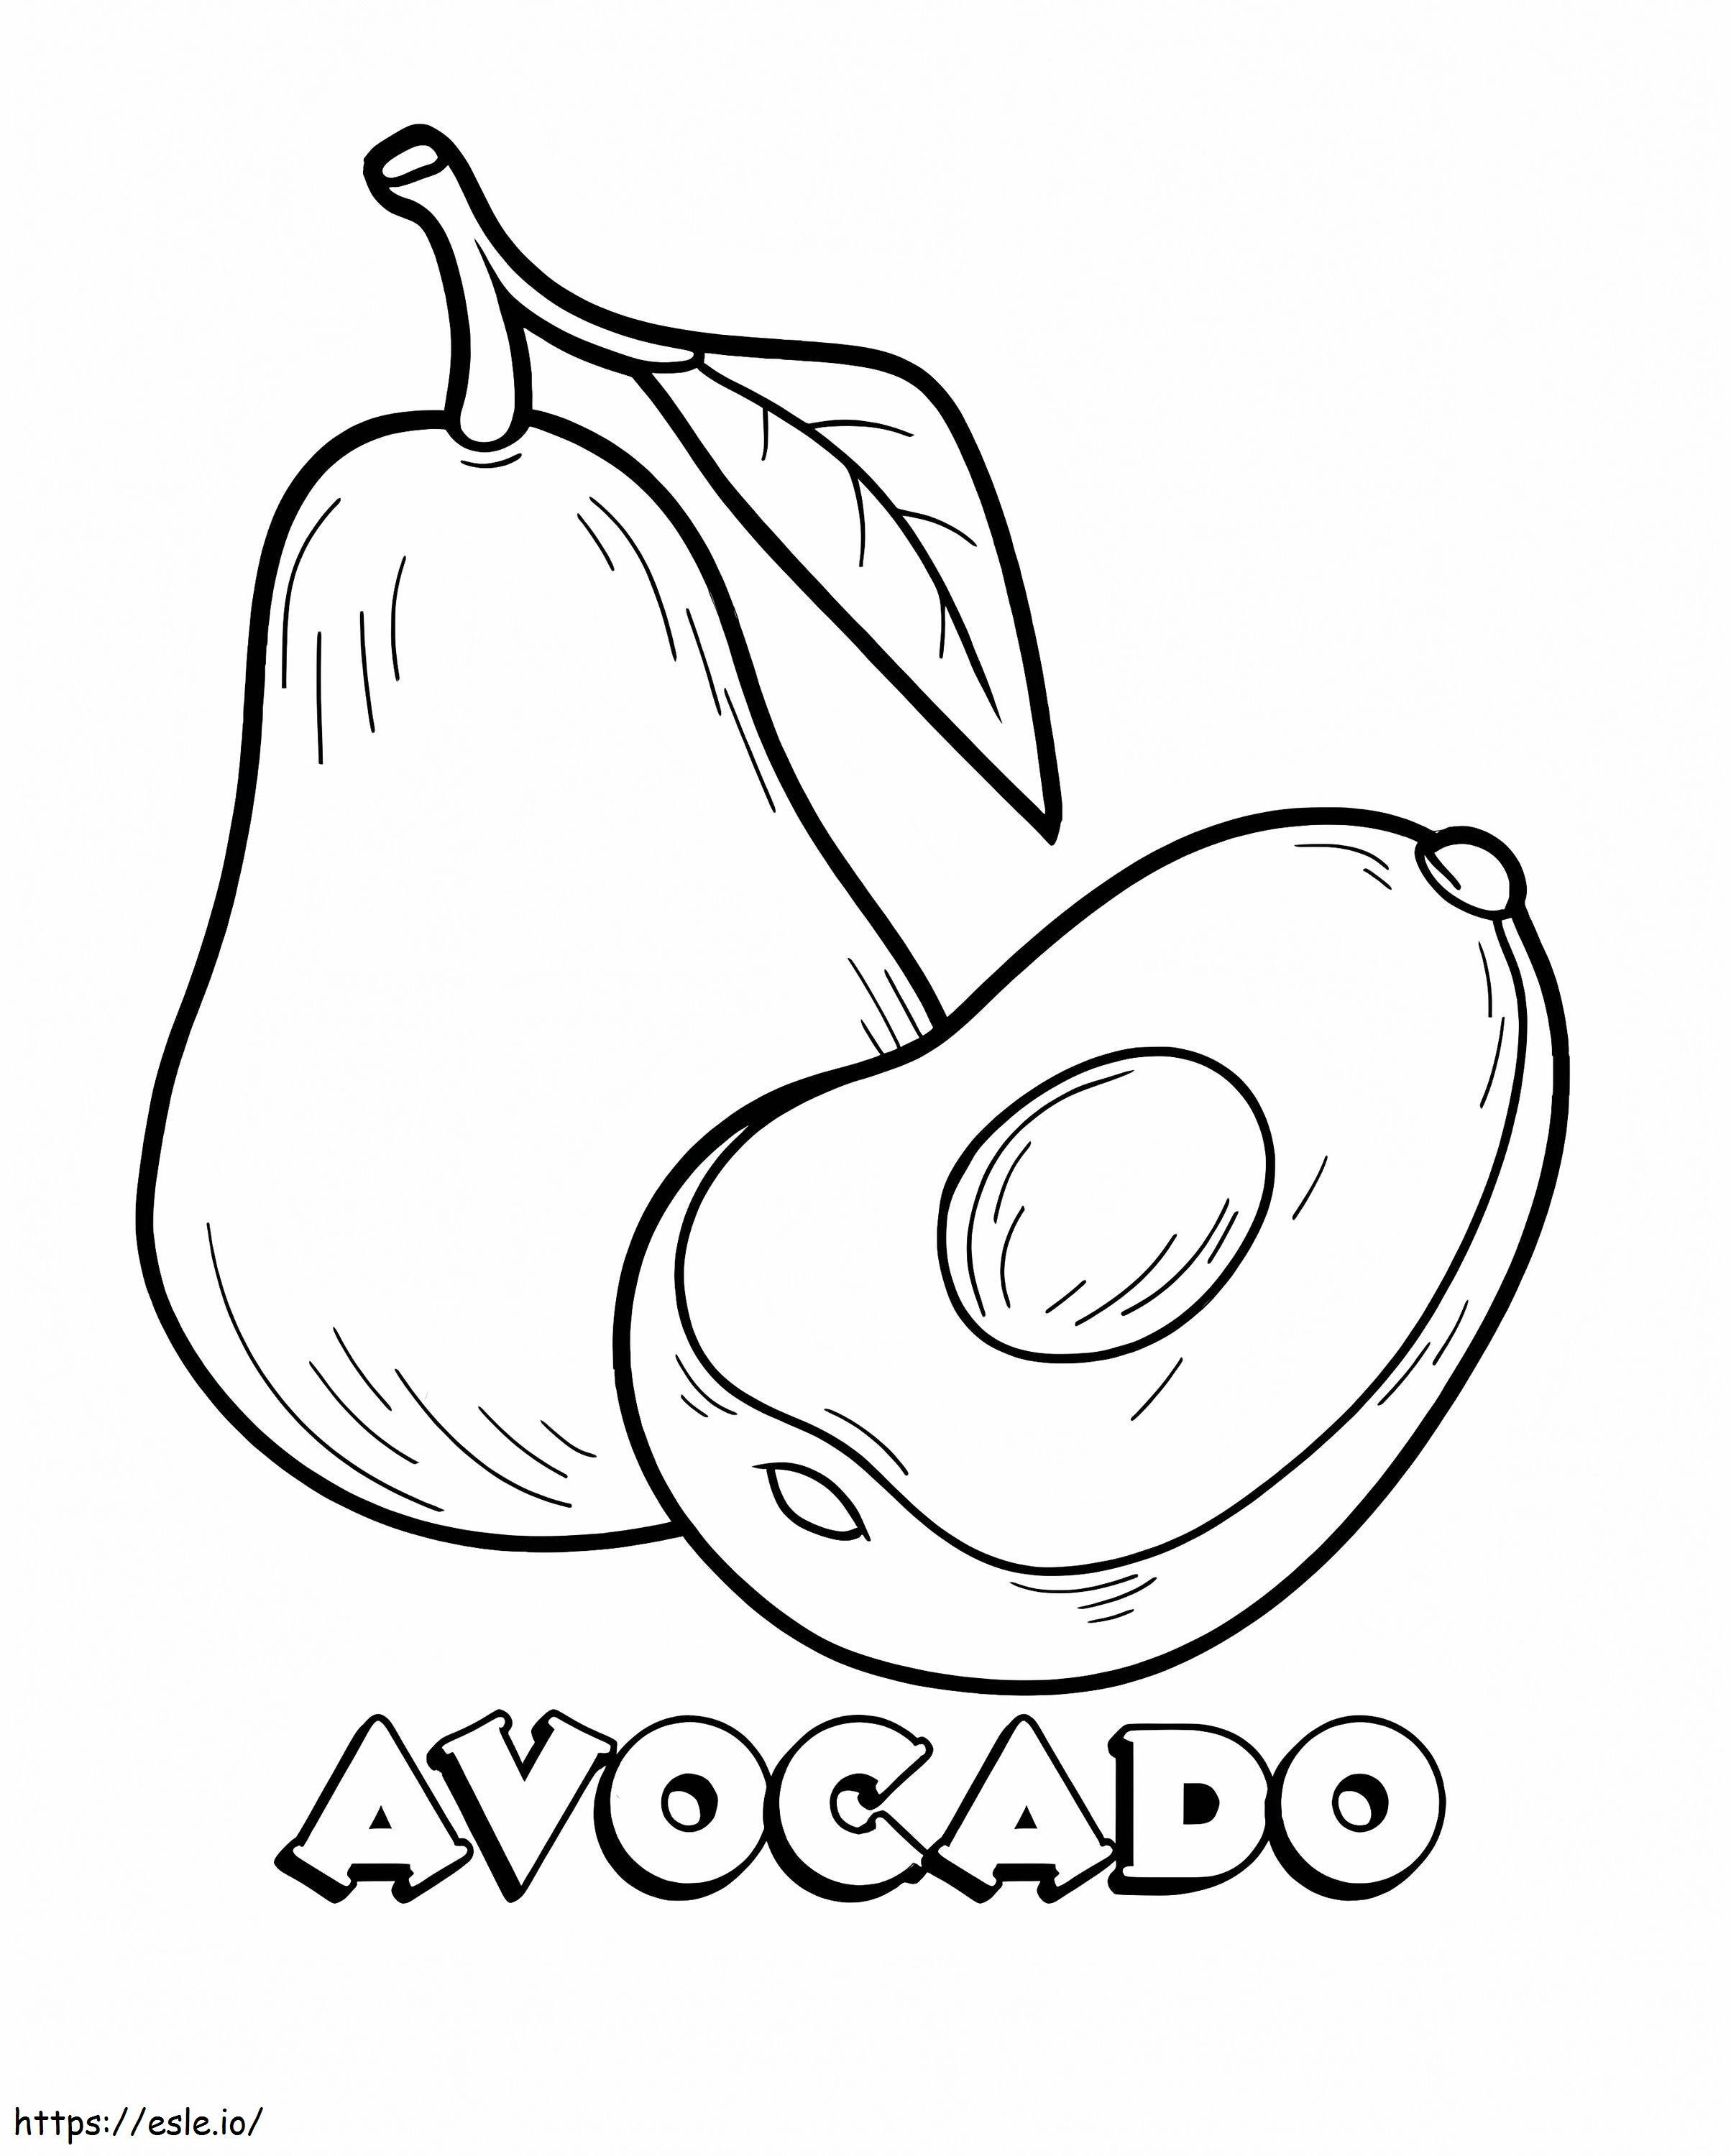 Avocado And A Half 4 coloring page